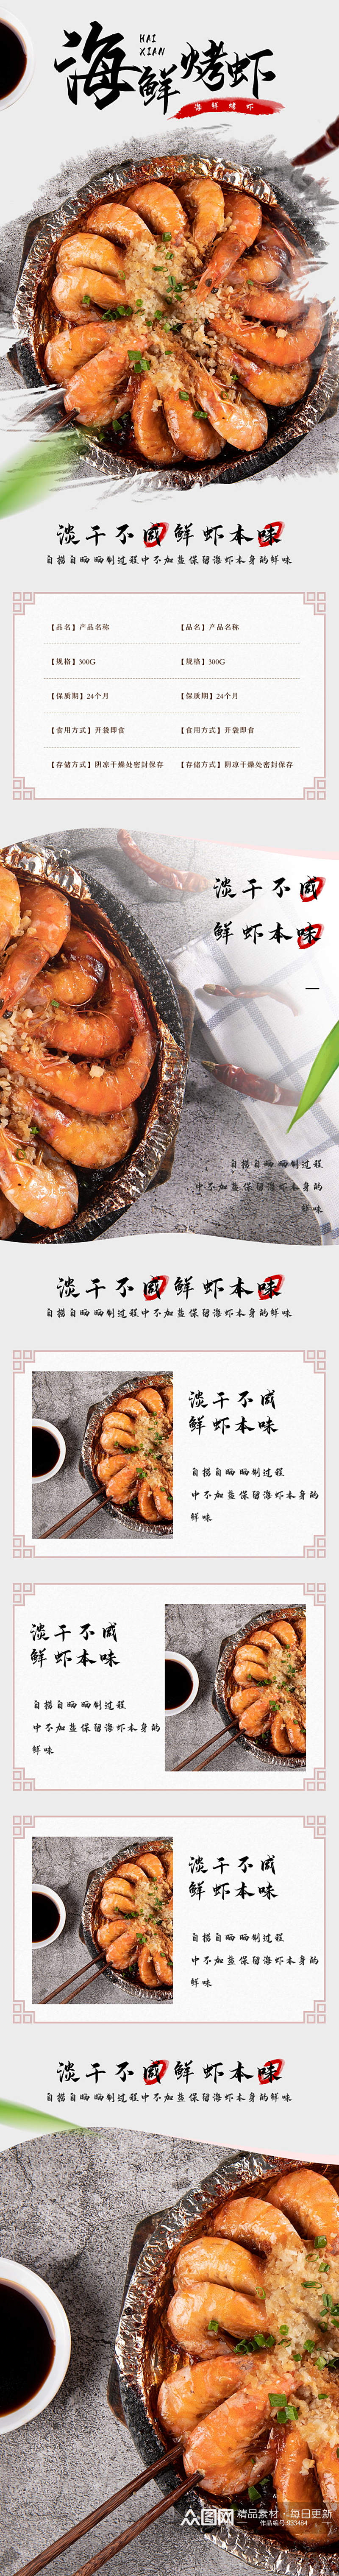 古风美食食品海鲜烤虾详情页素材